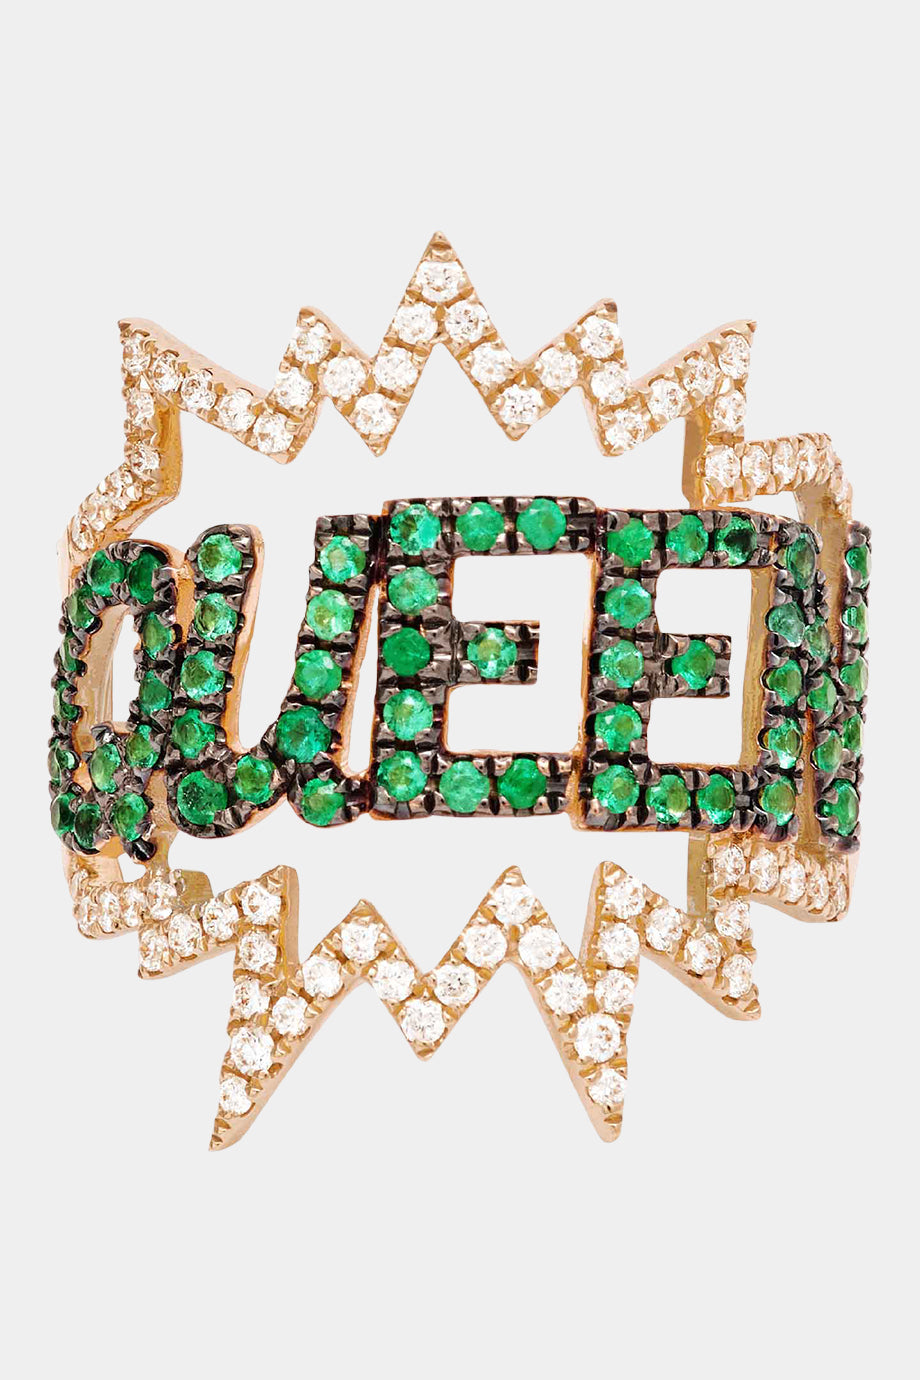 Queen Pop Art Ring In Green Emeralds